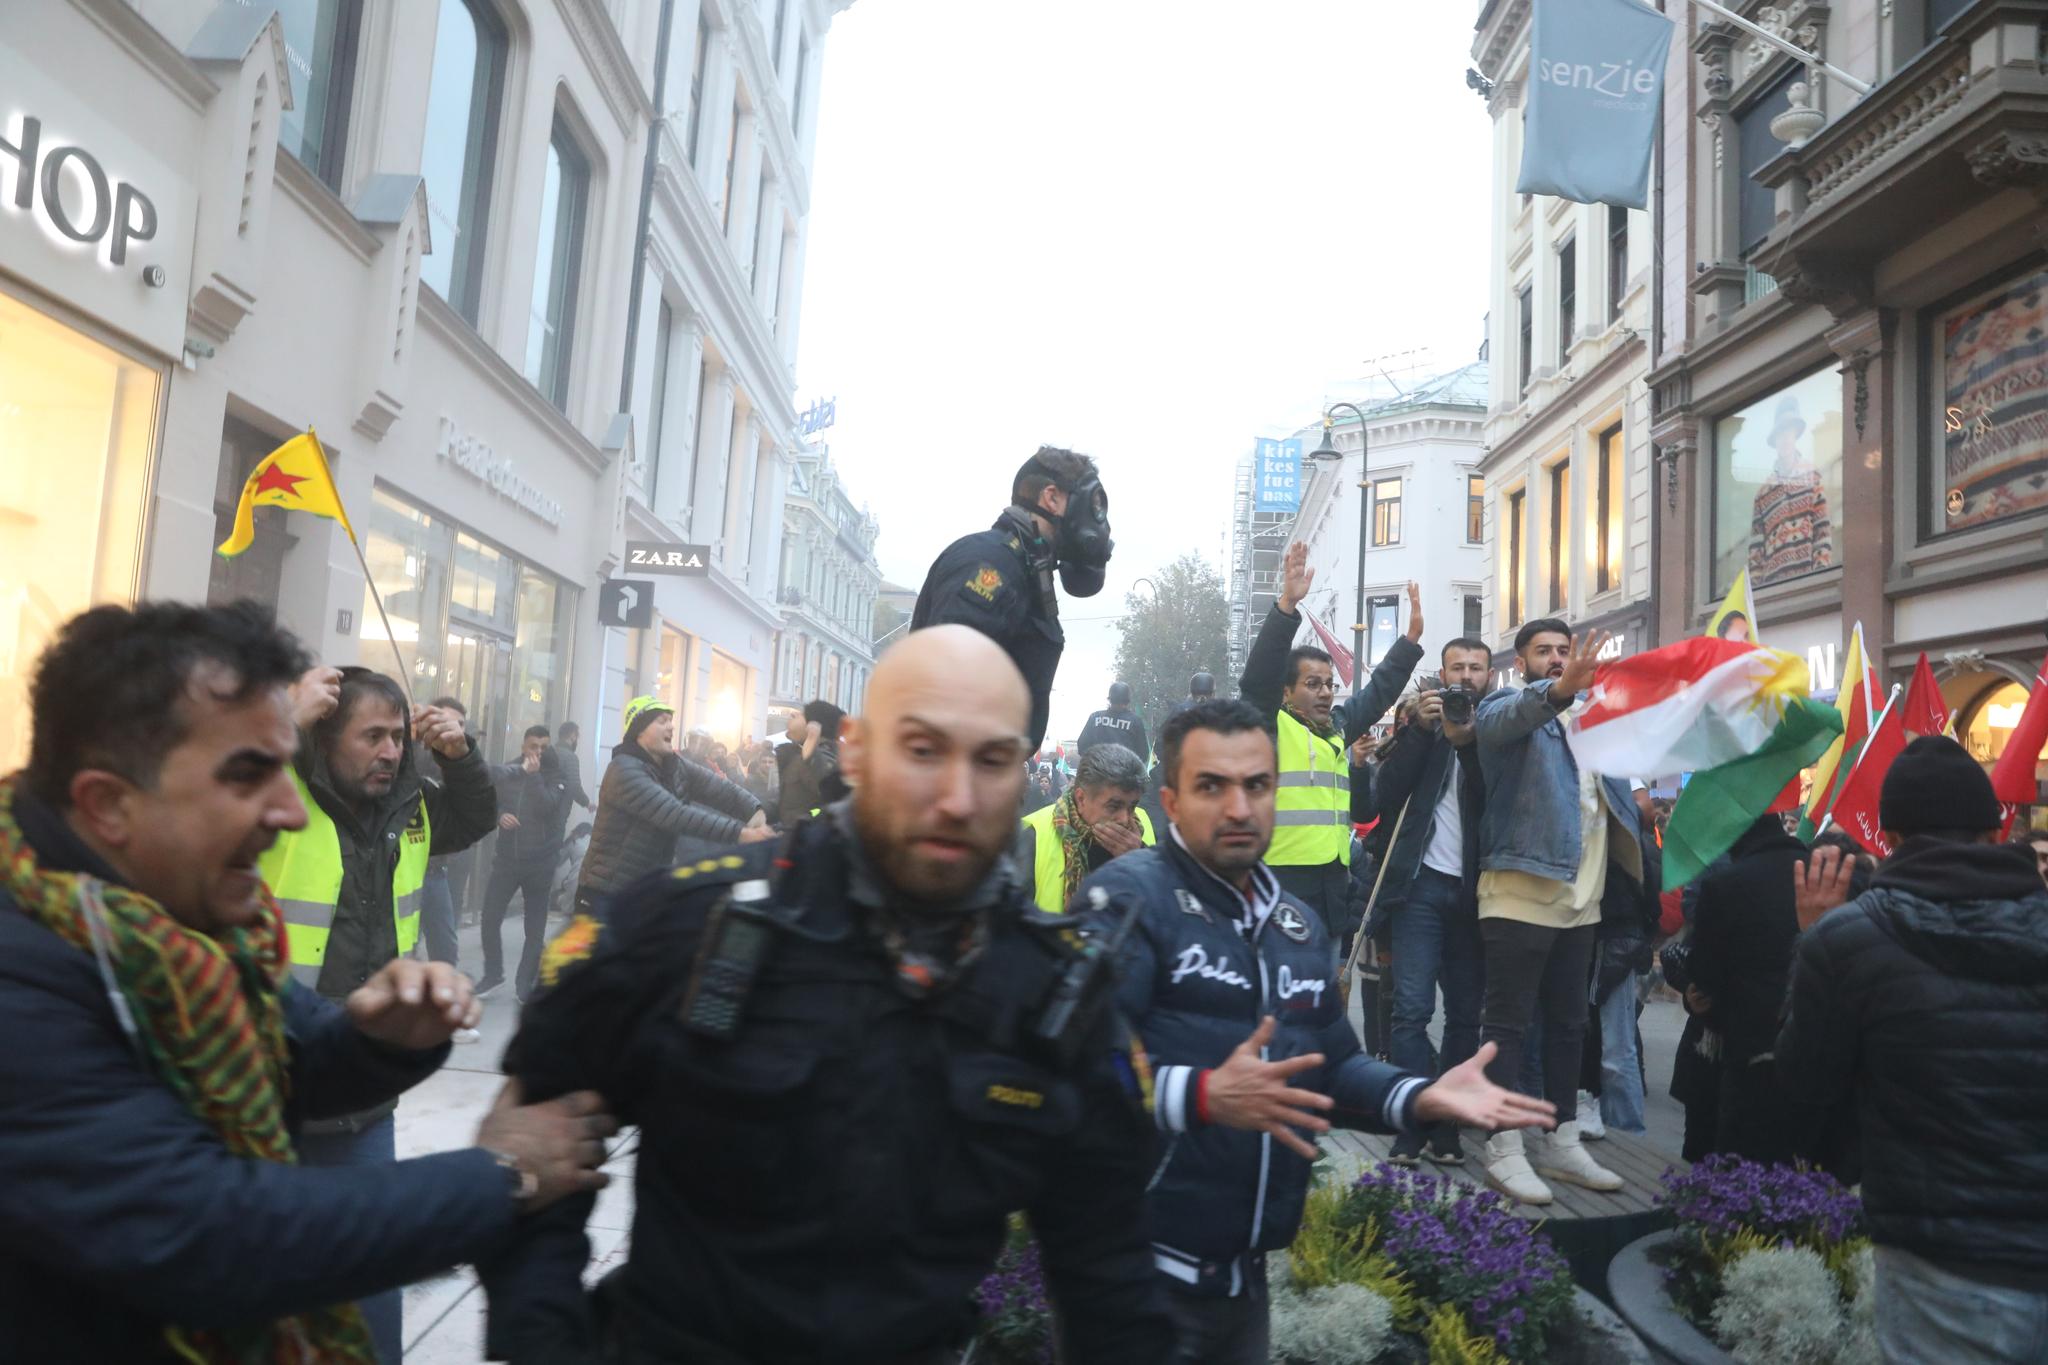 Politiet brukte tåregass i et forsøk på få kontroll over menneskemengden som gikk amok i Oslo sentrum lørdag. 